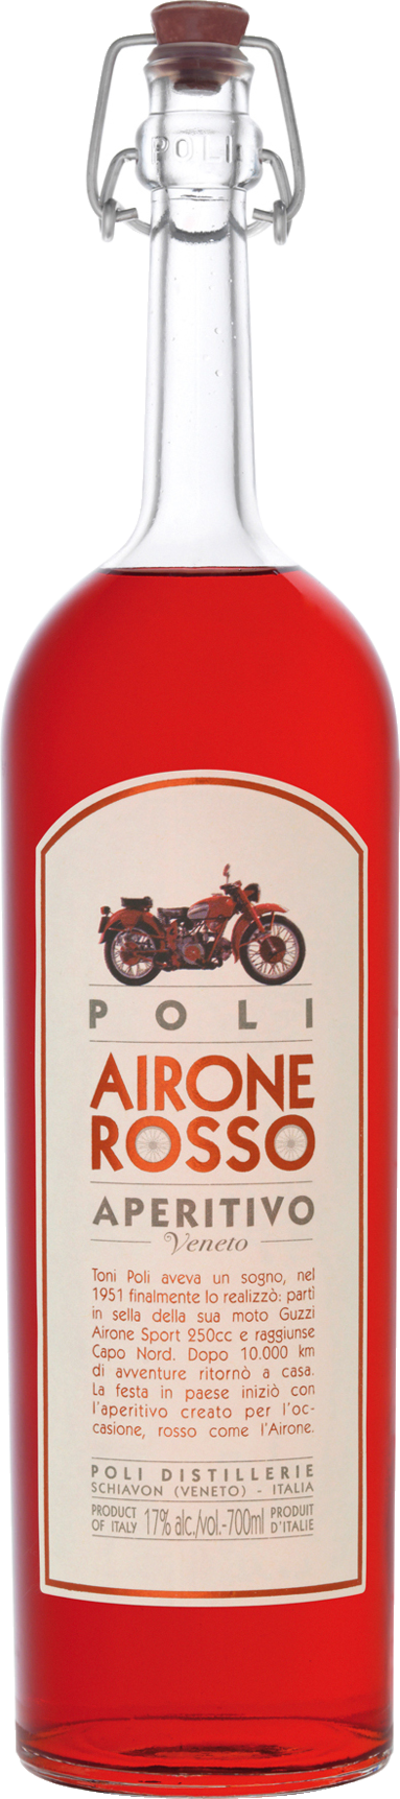 airone rosso aperitivo - Die Welt der Weine